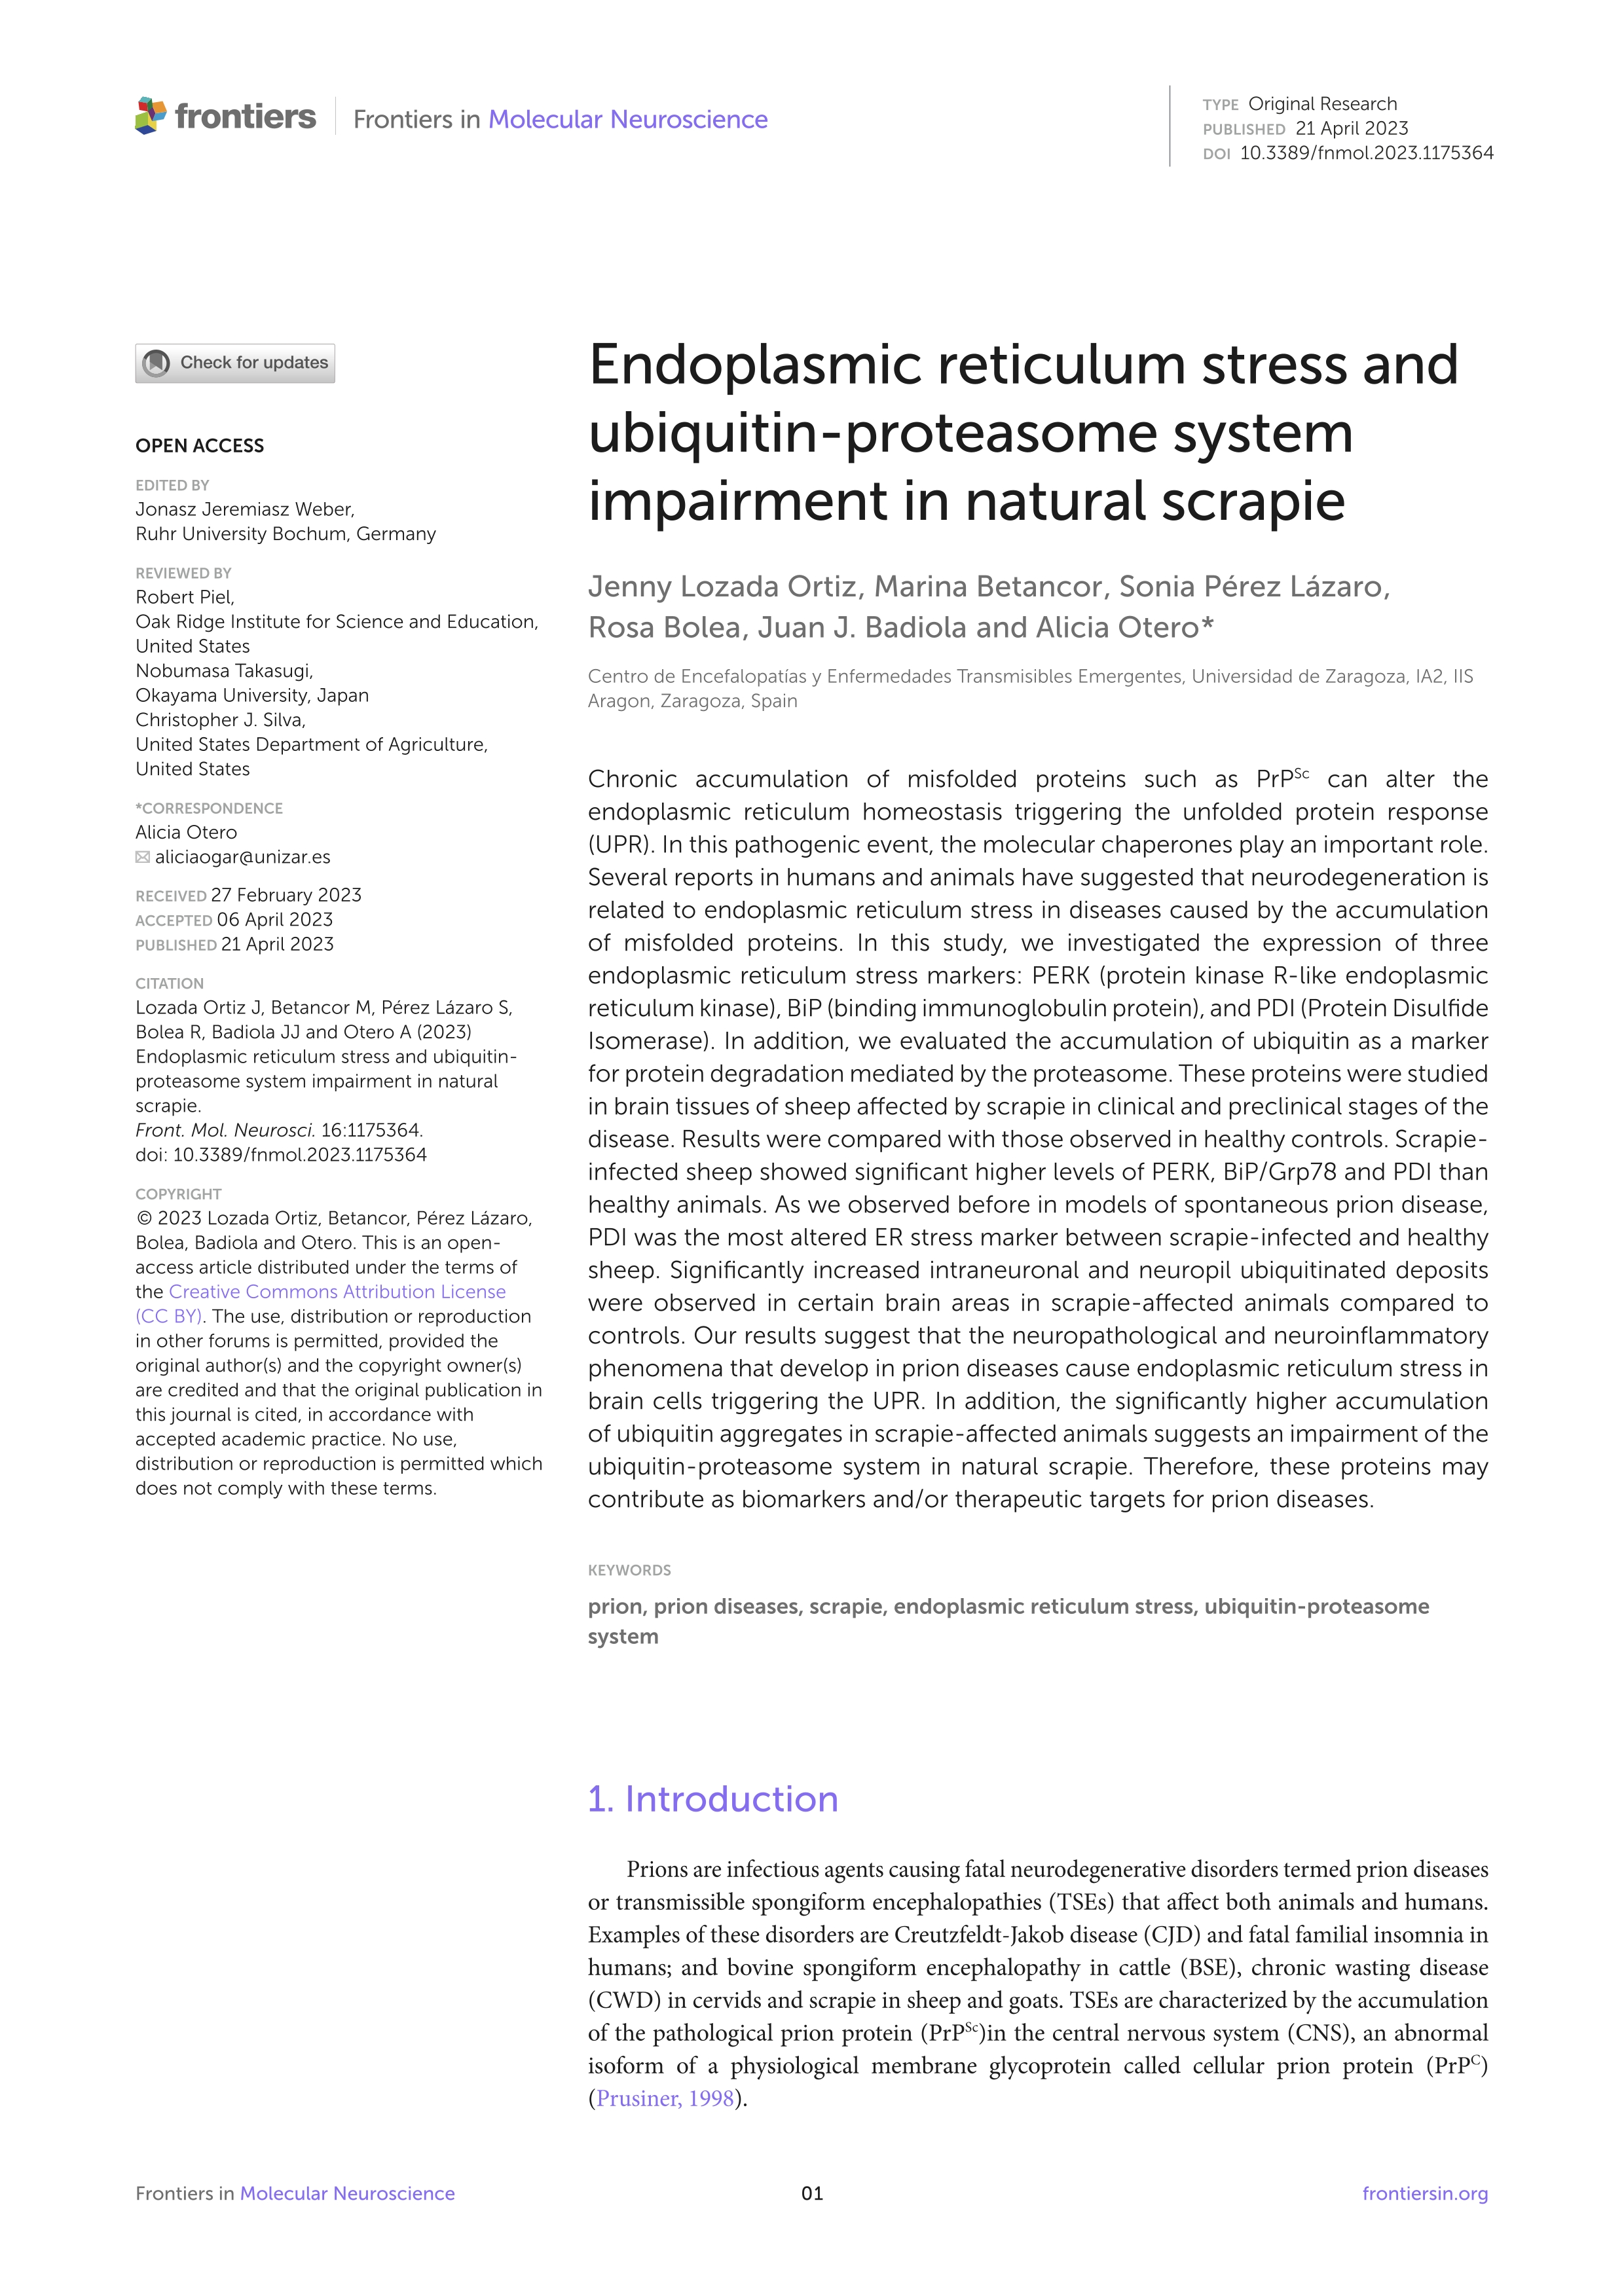 Endoplasmic reticulum stress and ubiquitin-proteasome system impairment in natural scrapie